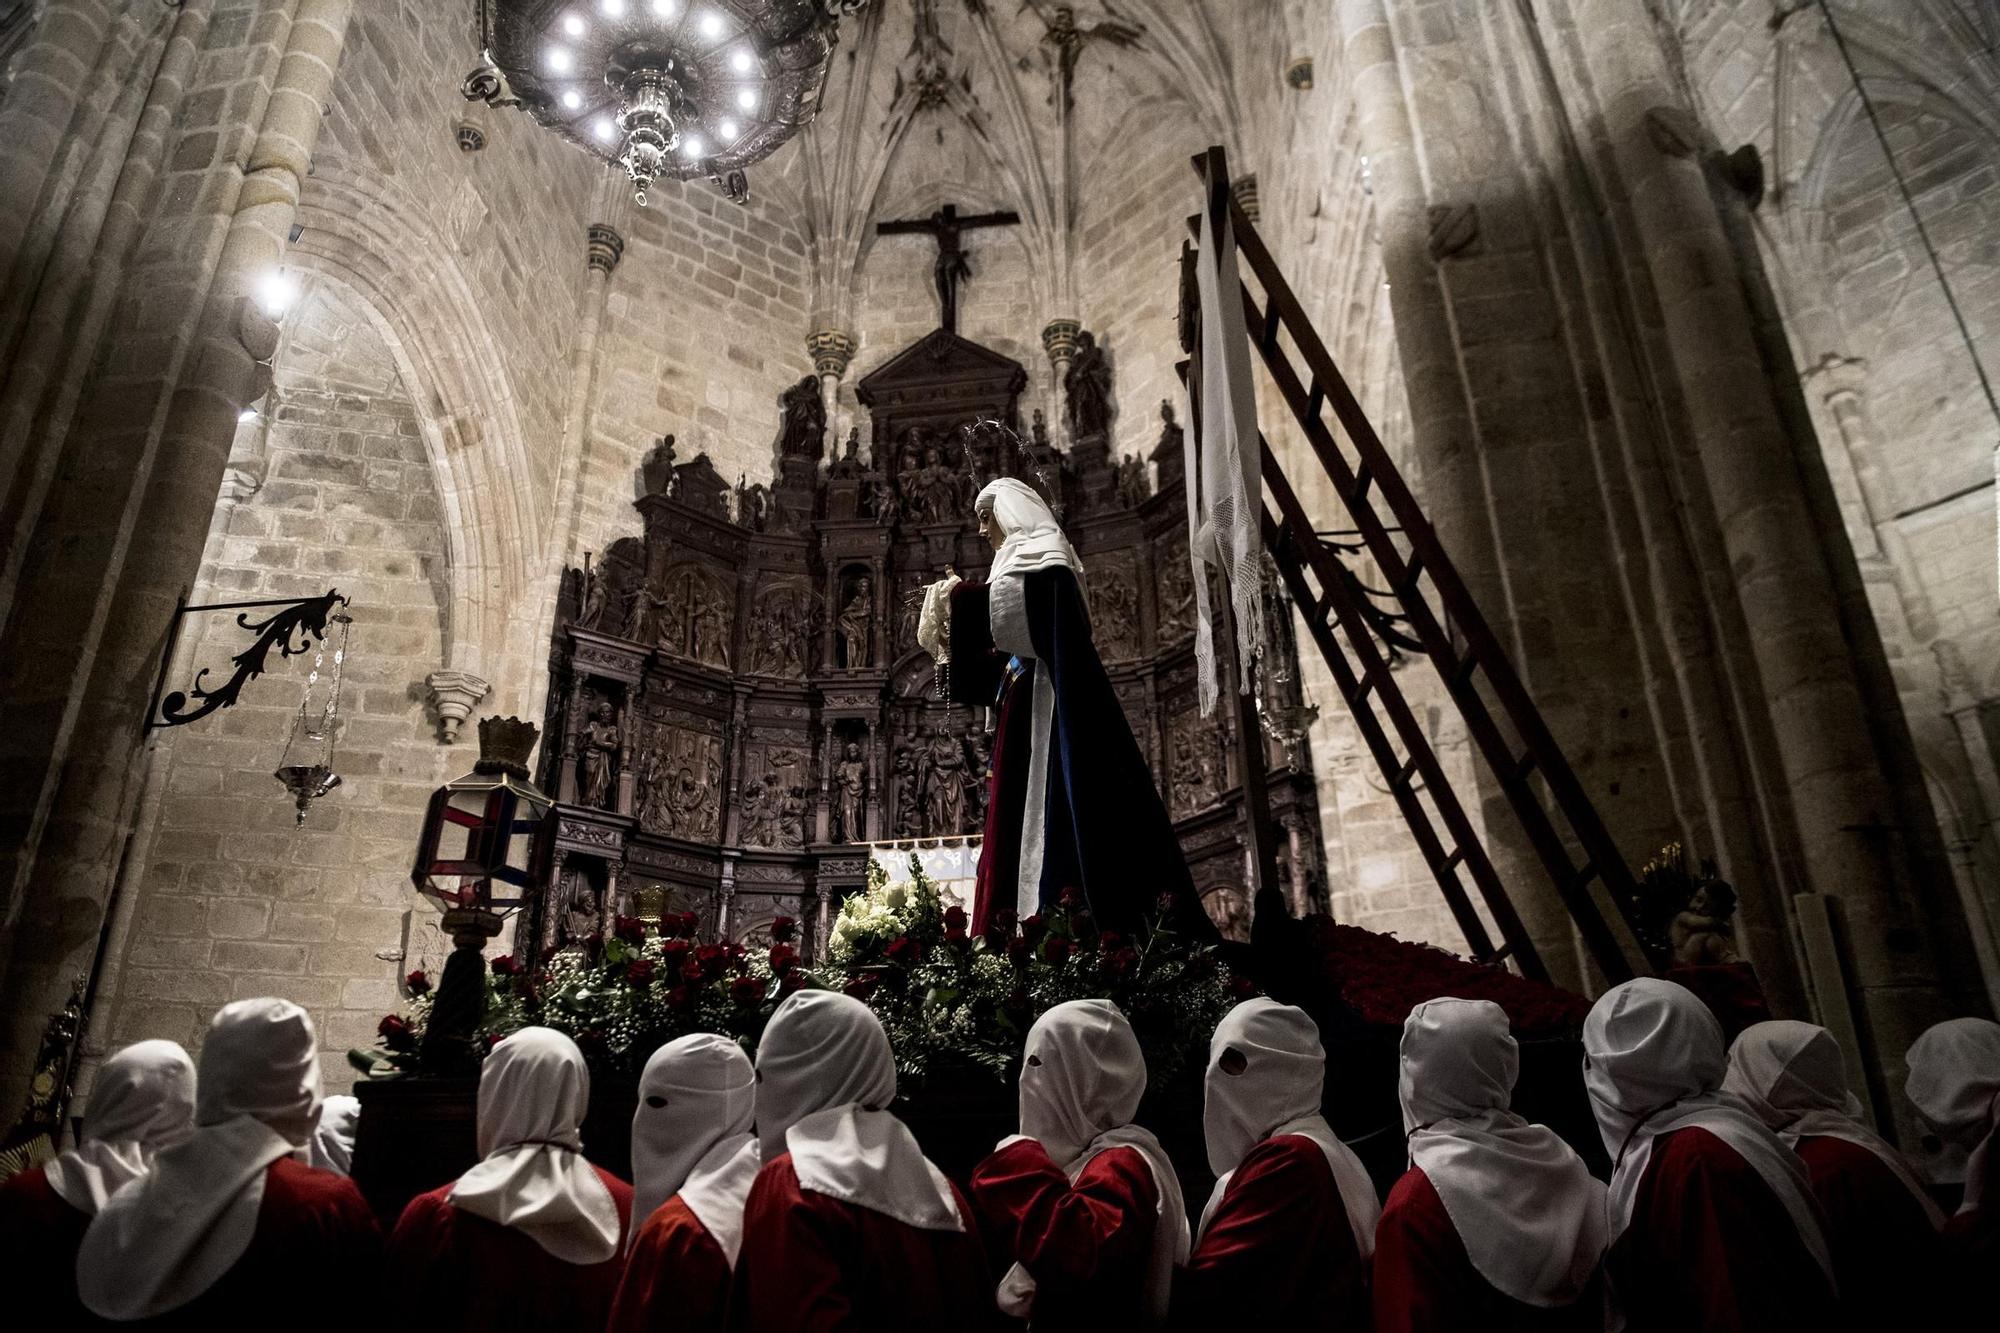 La Virgen del Buen Fin da aliento a la Semana Santa de Cáceres